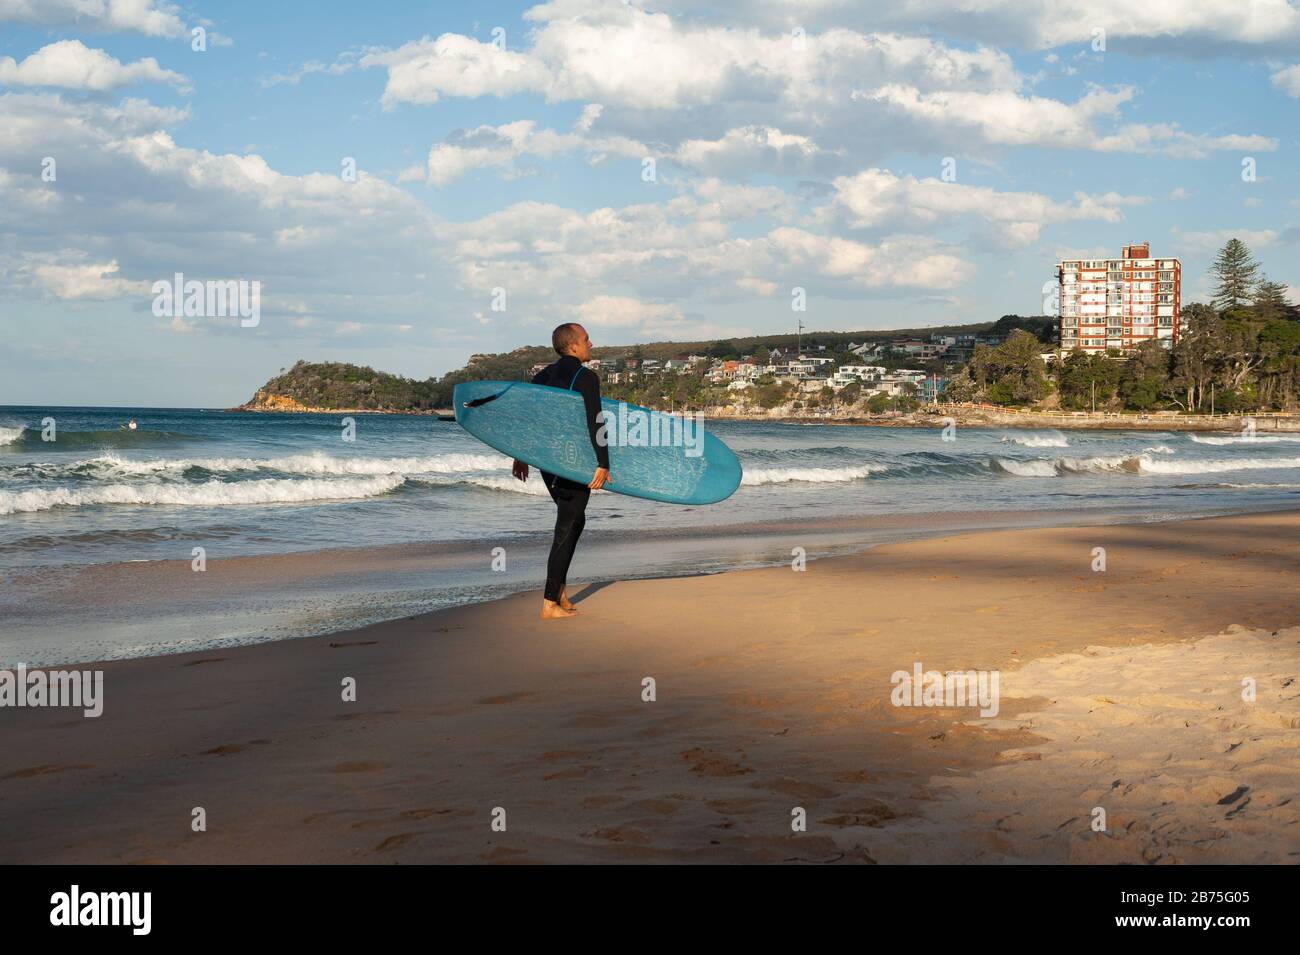 10.05.2018, Sydney, Nouvelle-Galles du Sud, Australie - un homme marche le long de Manly Beach avec son planche de surf sous son bras tandis que d'autres surfeurs attendent en arrière-plan la bonne vague. [traduction automatique] Banque D'Images